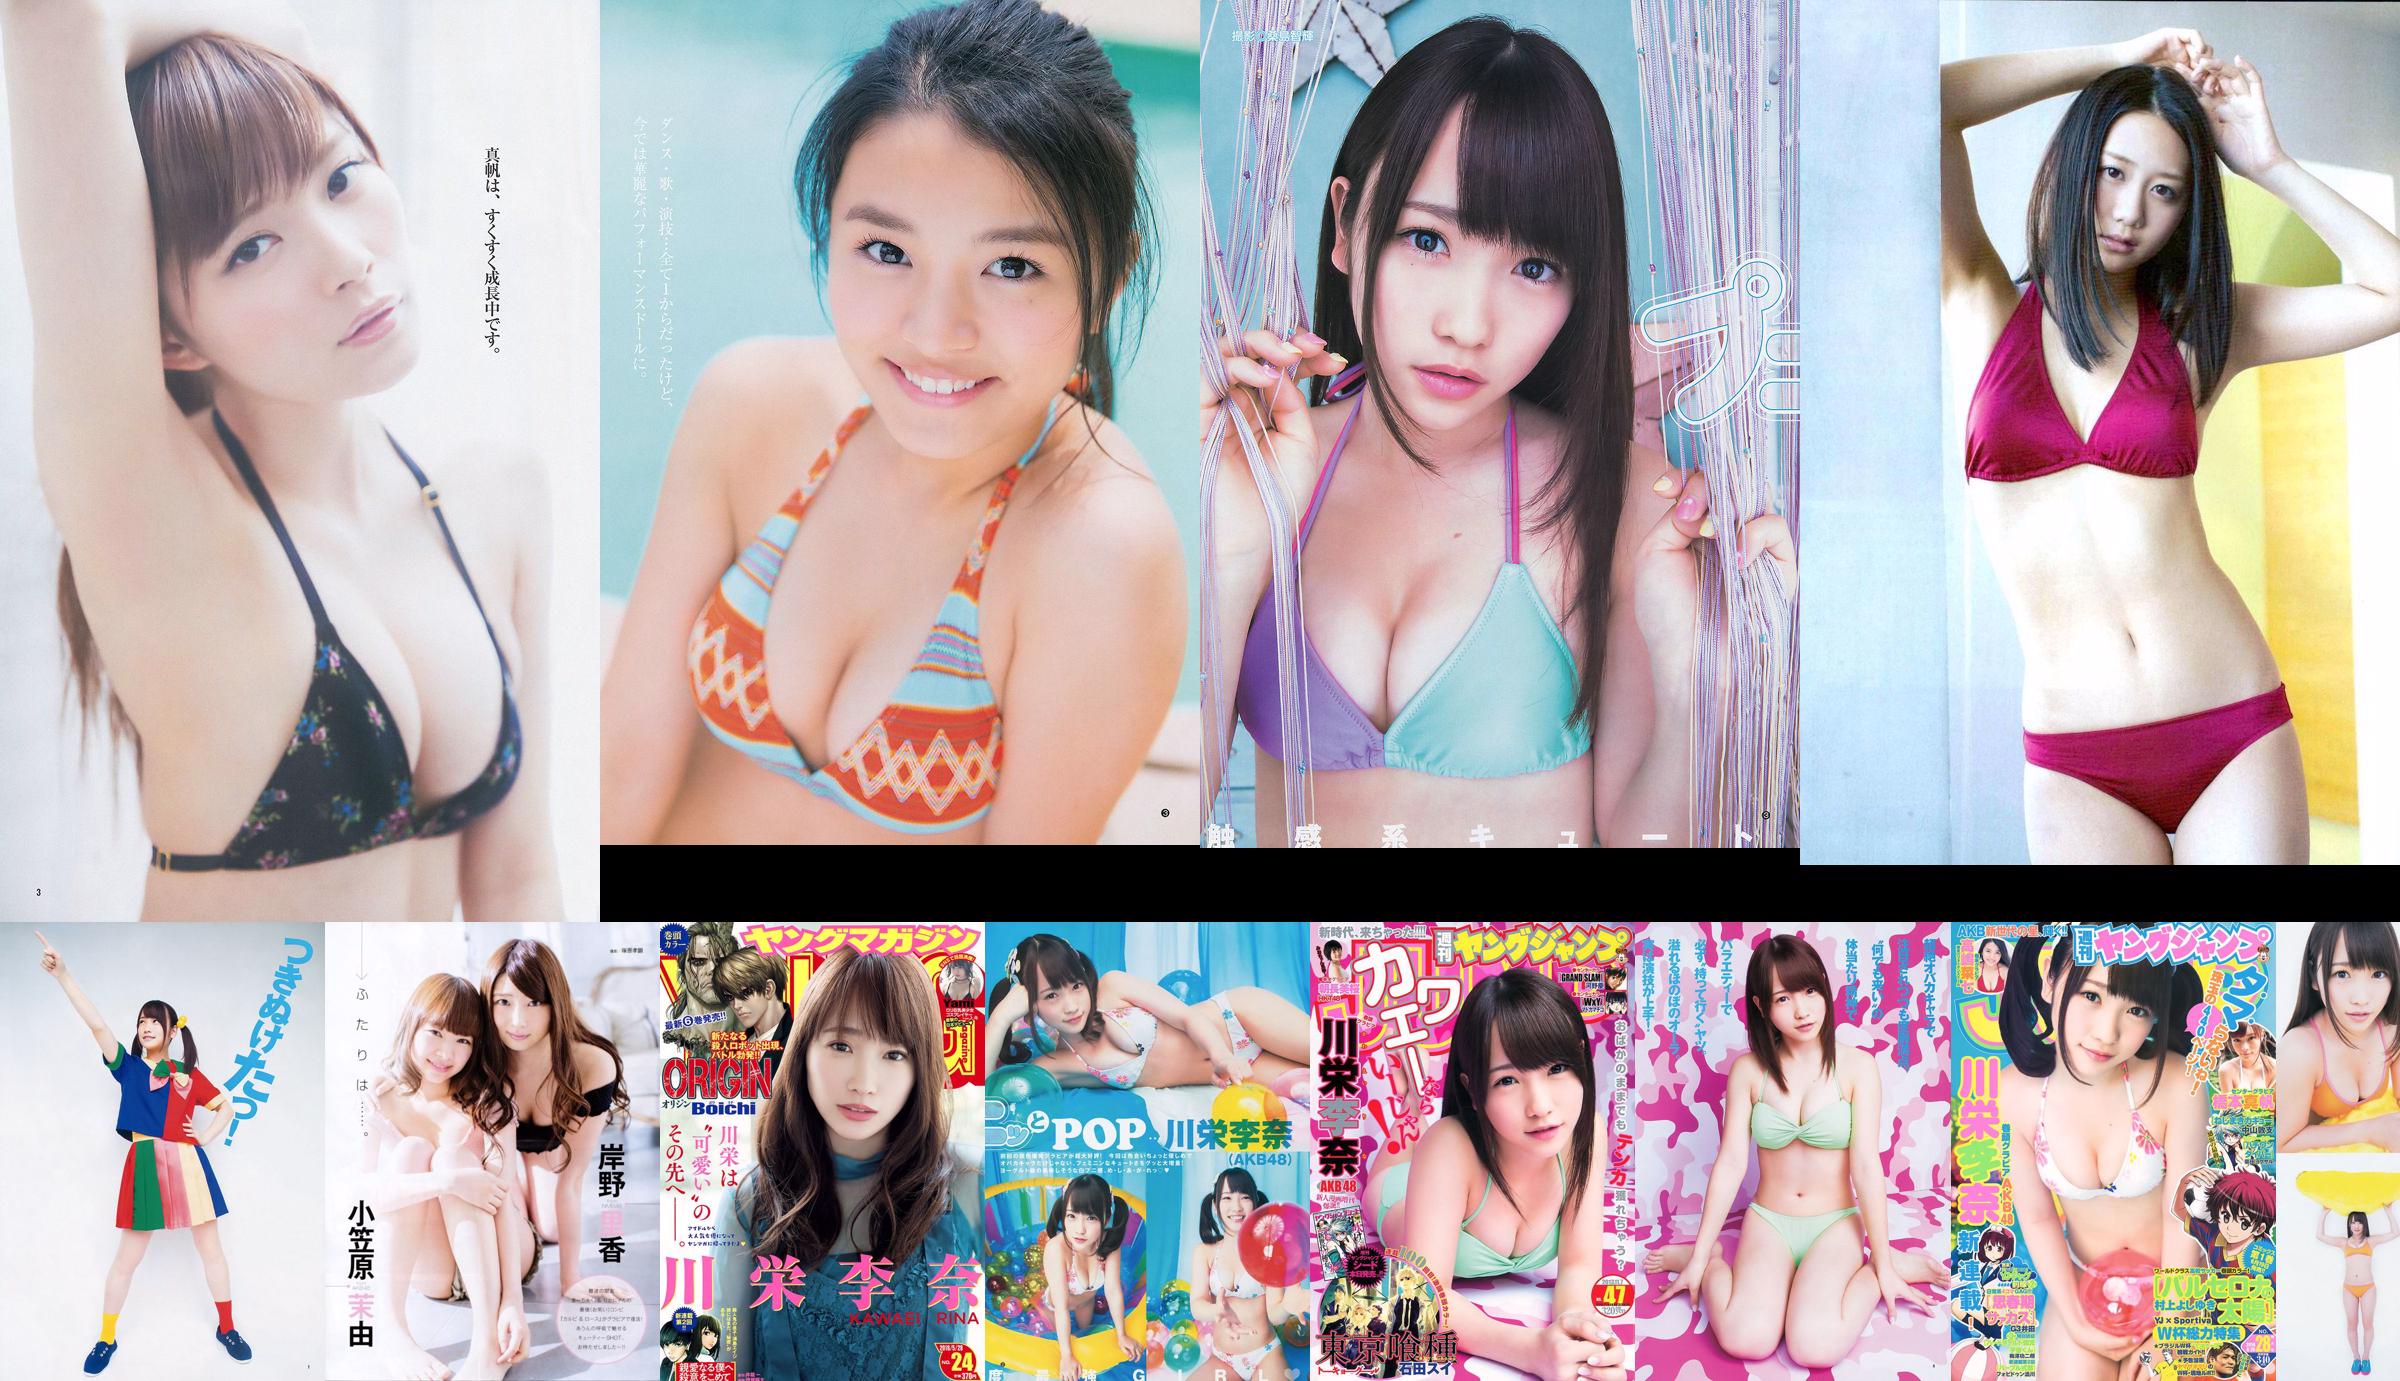 [ENTAME] Kawaei Rina Furuhata Naka e Kishino Rika giugno 2014 Photo Magazine No.827a8c Pagina 5